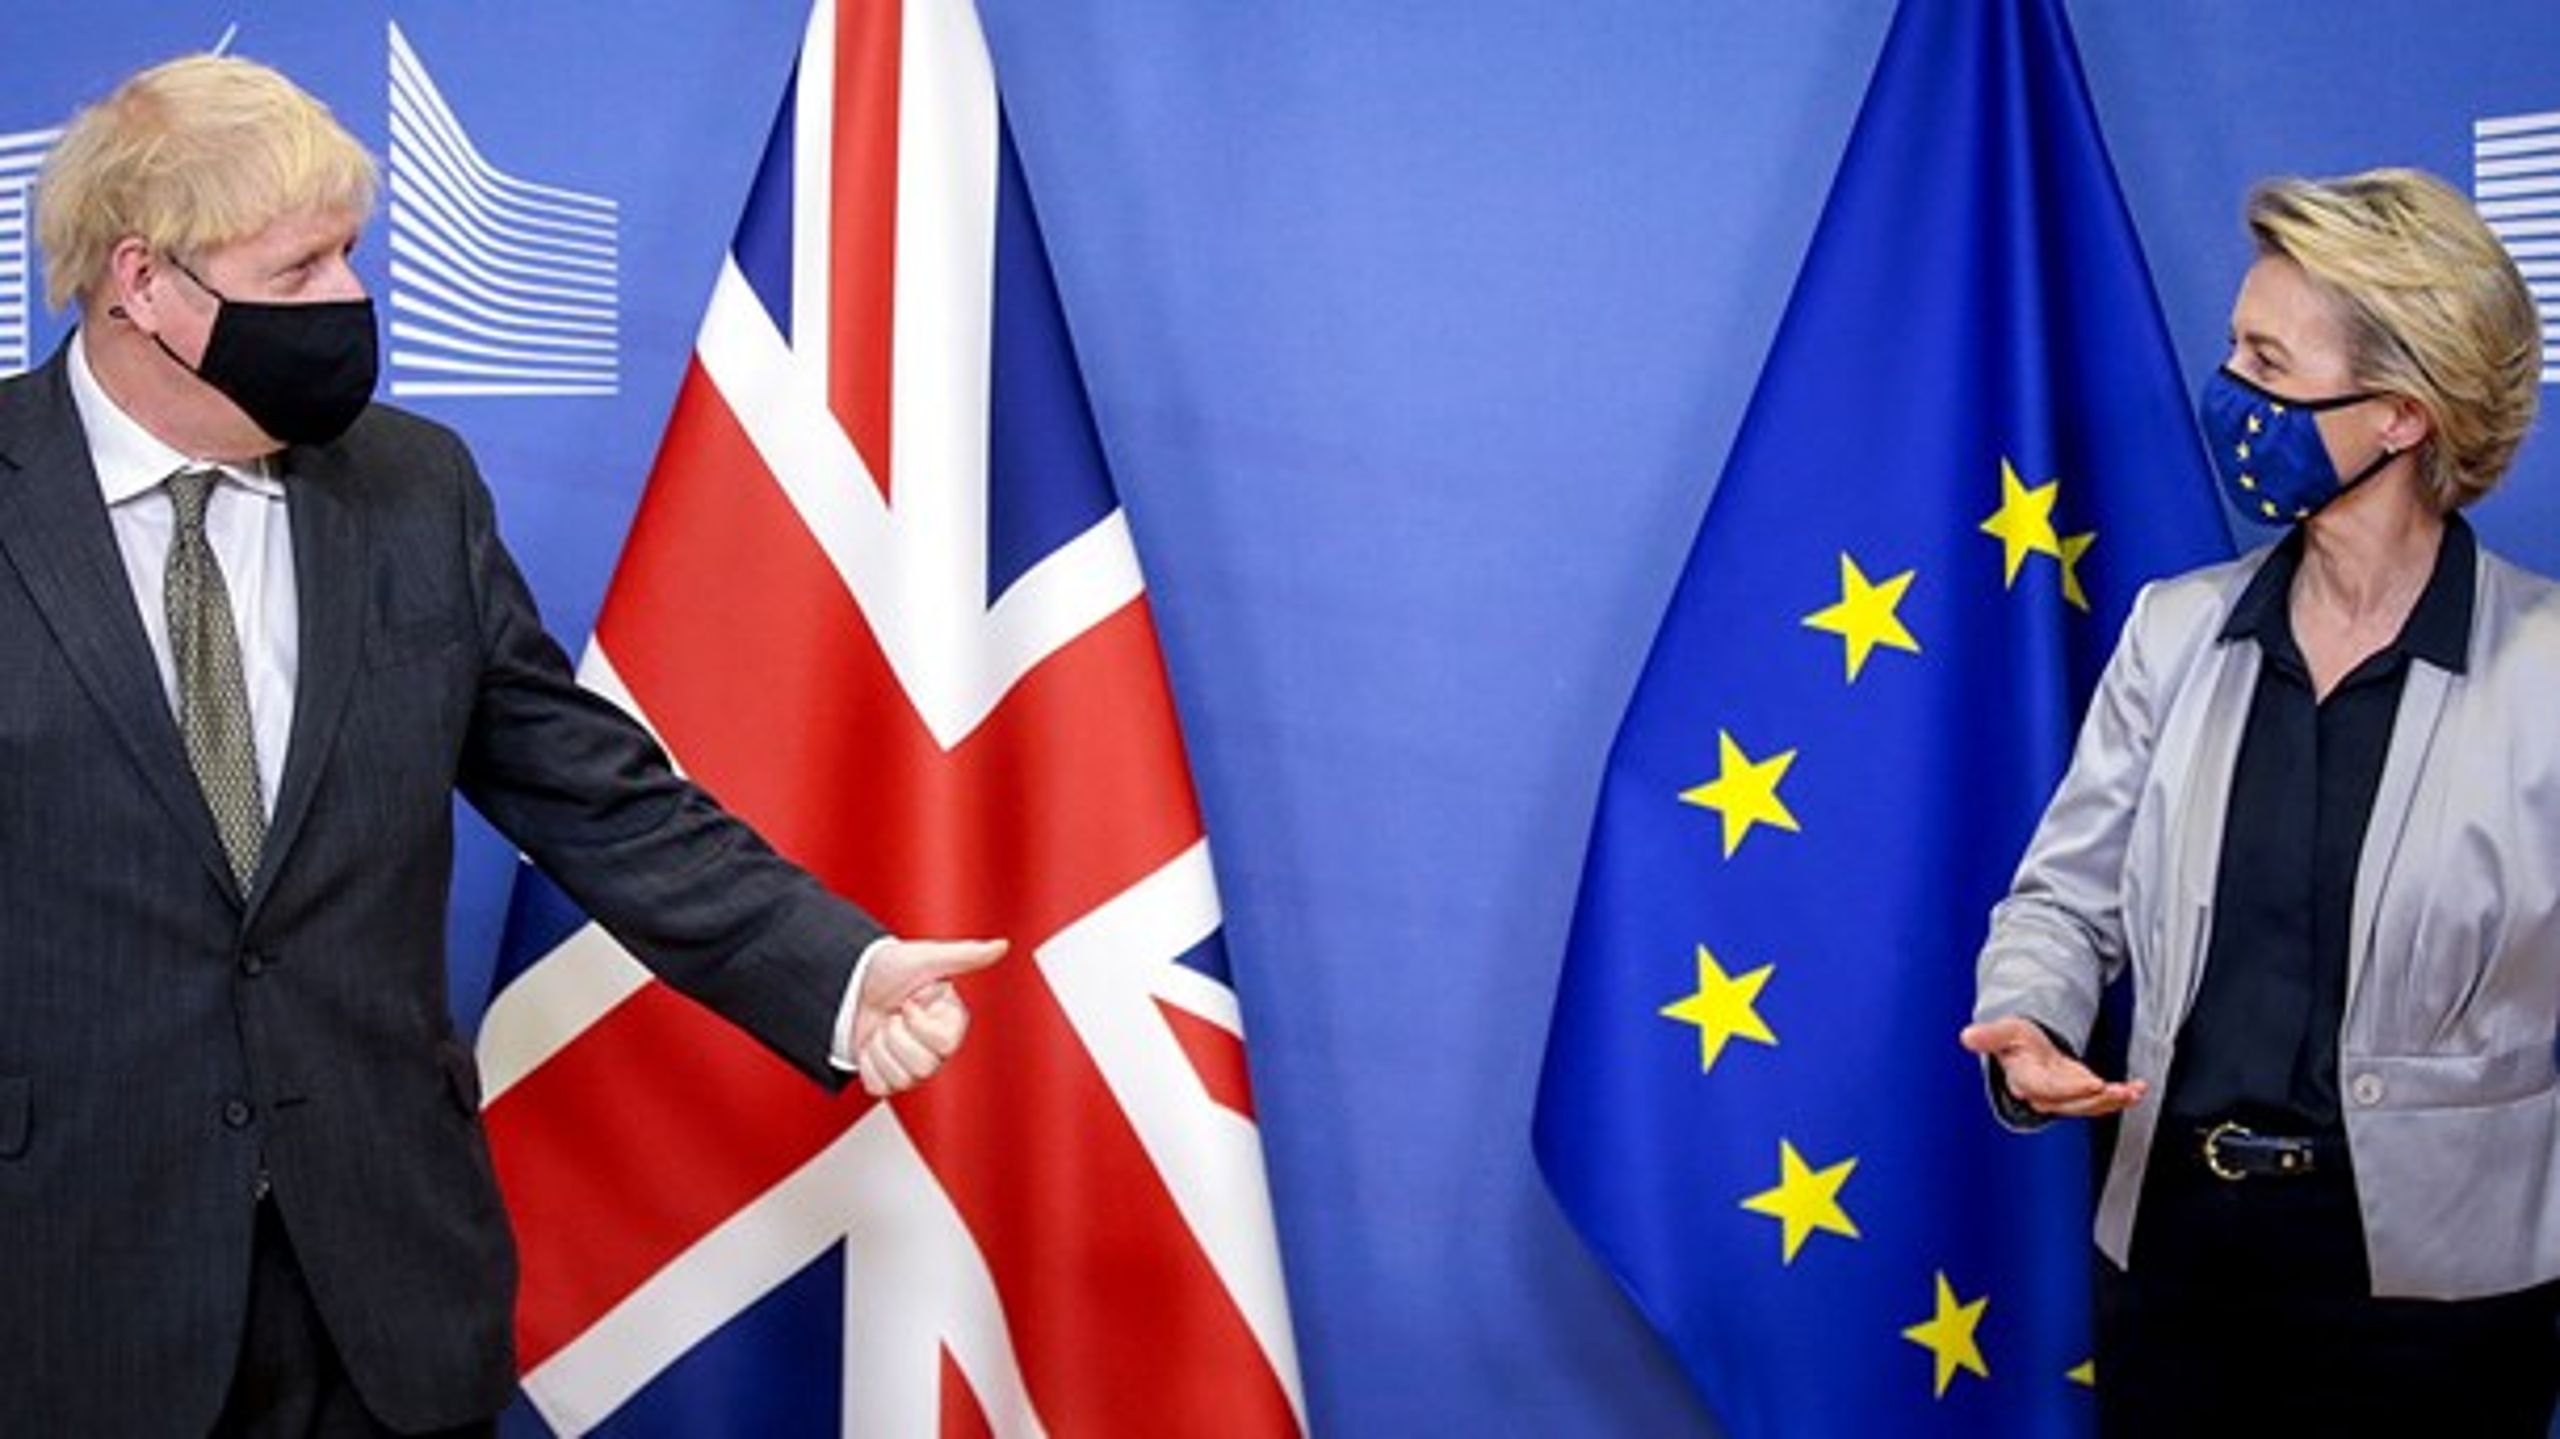 En ny&nbsp;aftale mellem EU og Storbritannien&nbsp;opstiller rammerne for en række områder som handels-, forsknings- og politisamarbejde. Men der er ikke nogen aftale om udviklingssamarbejde.